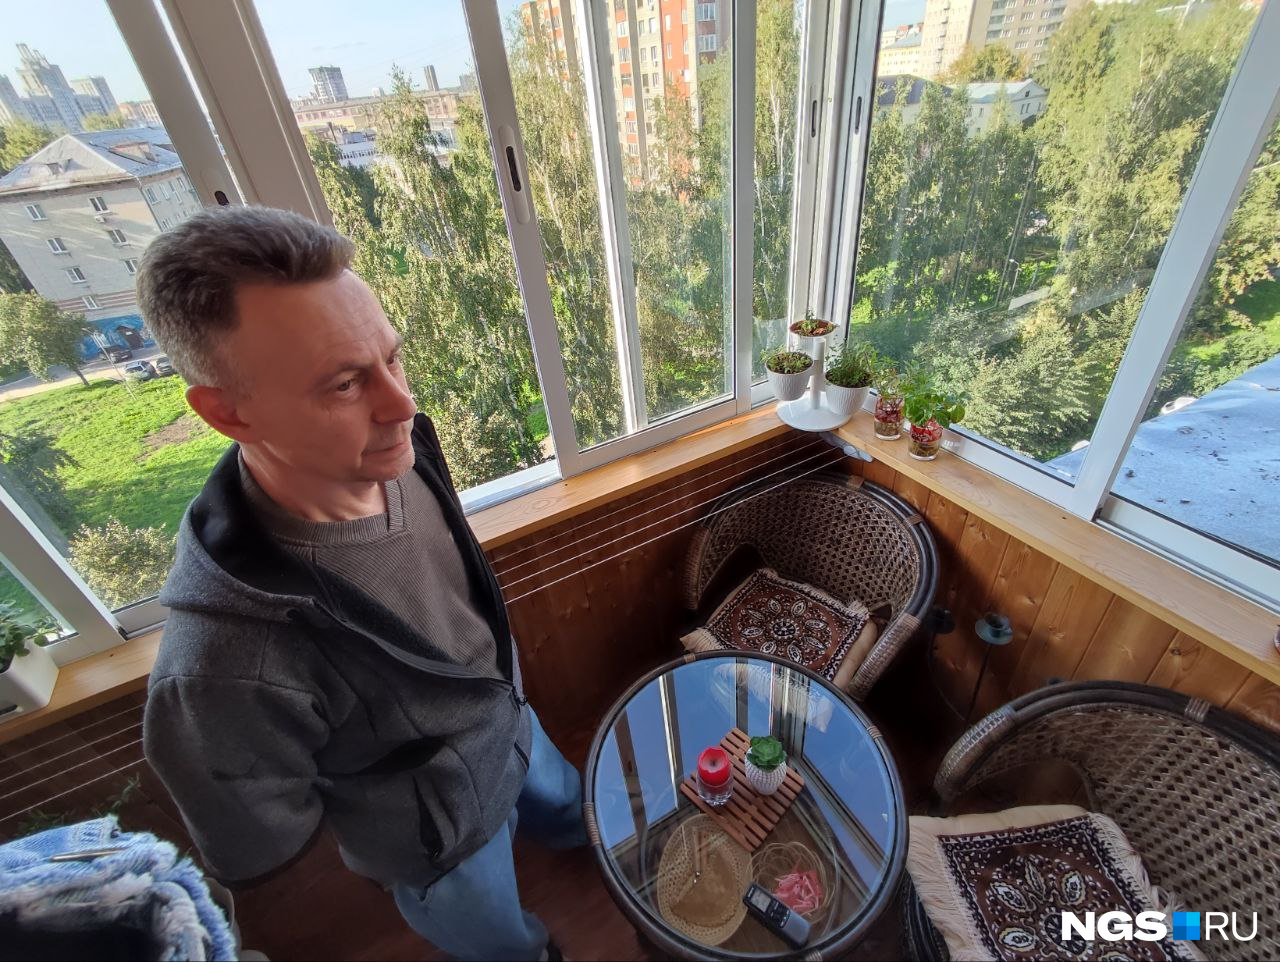 Сергей Родичев регулярно собирает с карнизов куски штукатурки и кирпичей, до которых может дотянуться из окон или с балкона